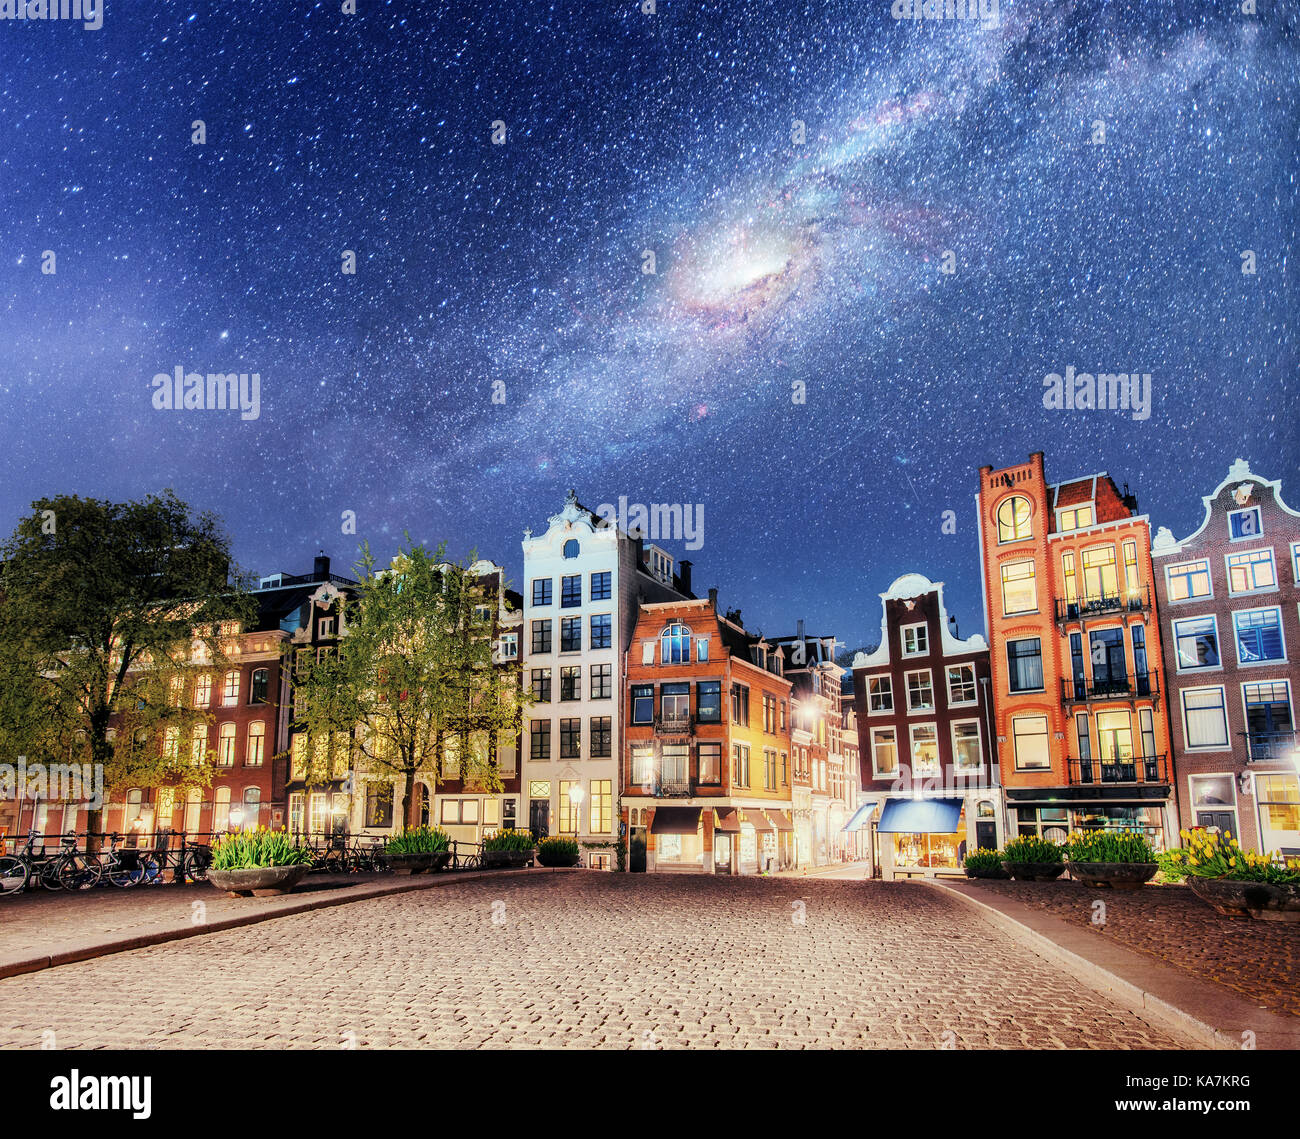 Bella notte a Amsterdam. Illuminazione notturna degli edifici e barche vicino all'acqua nel canale. Foto Stock